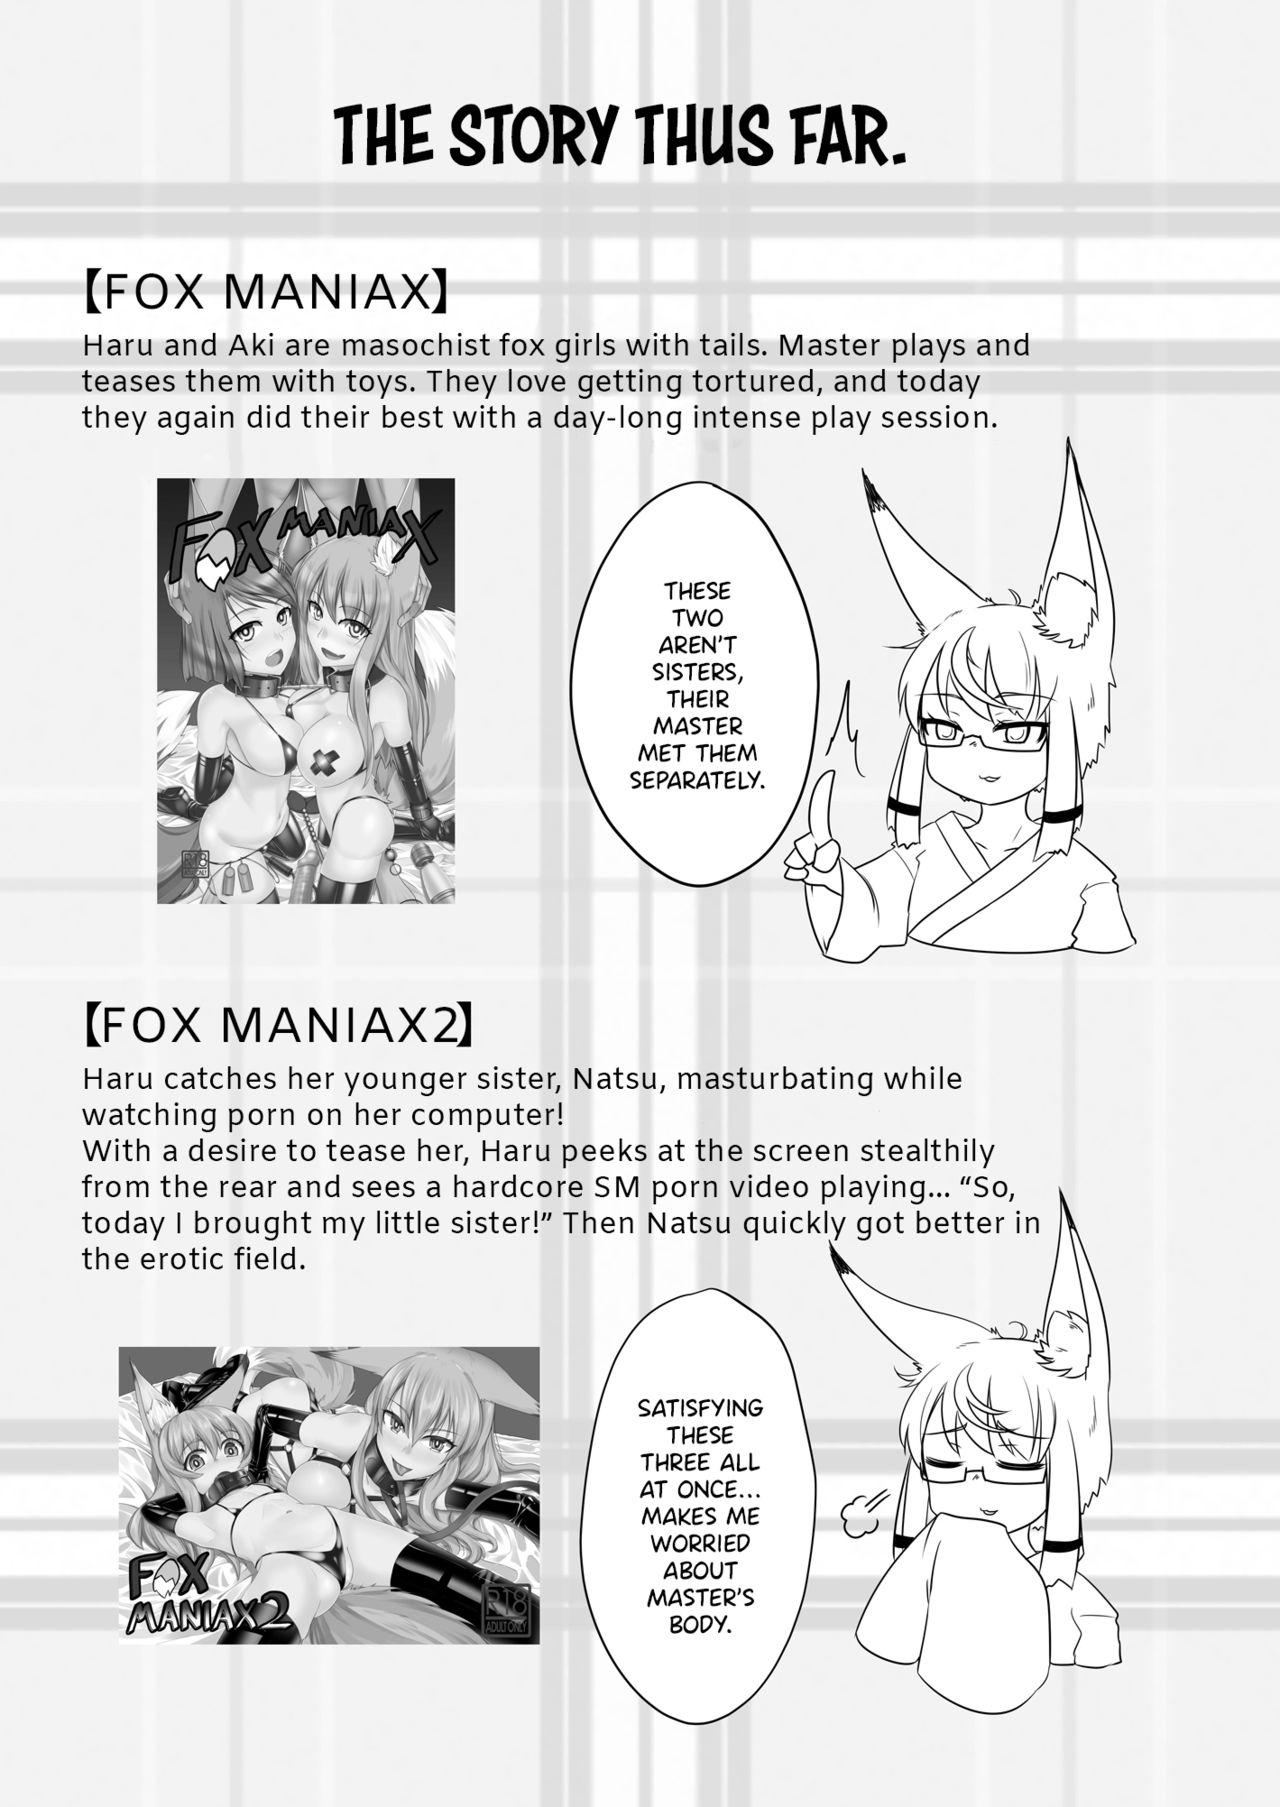 FOX MANIAX3 1